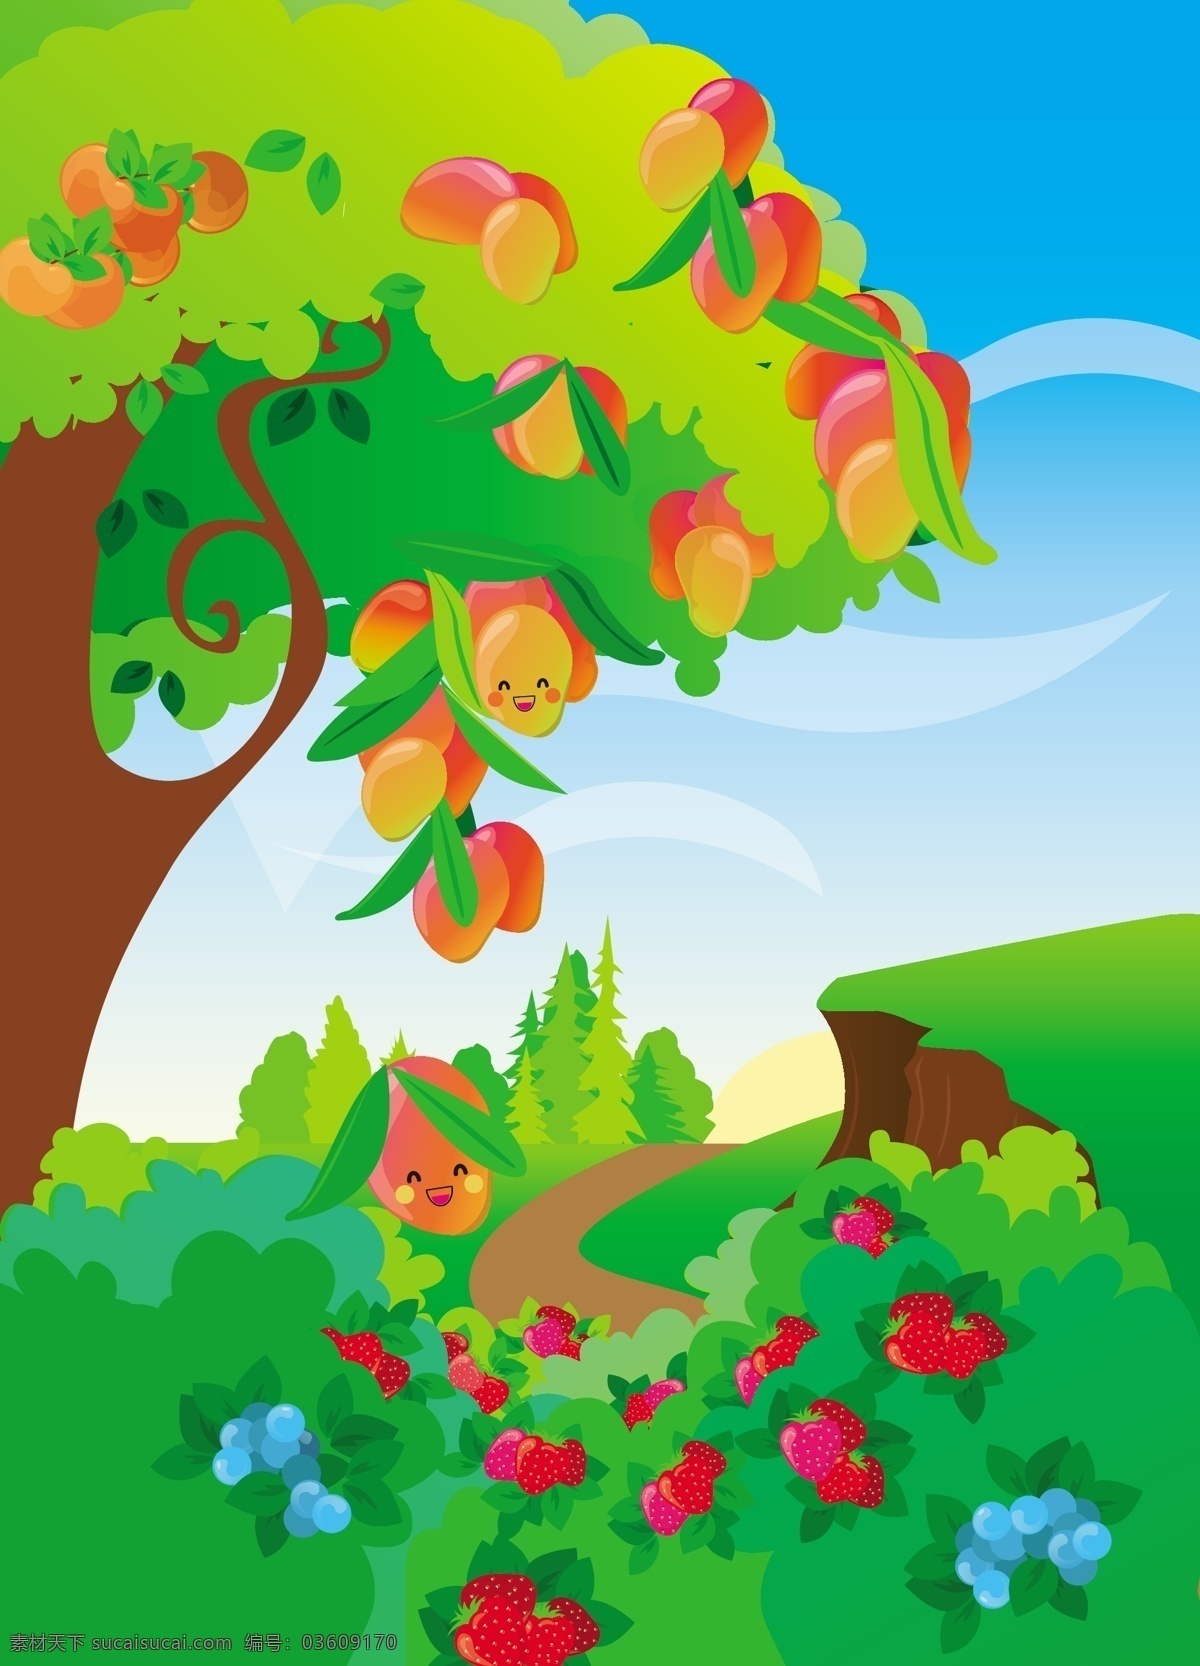 草莓 儿童 卡通 蓝莓 芒果 矢量素材 树 水果 自然风景 卡 通水 果树 风景 图 矢量 模板下载 自然景观 矢量图 日常生活